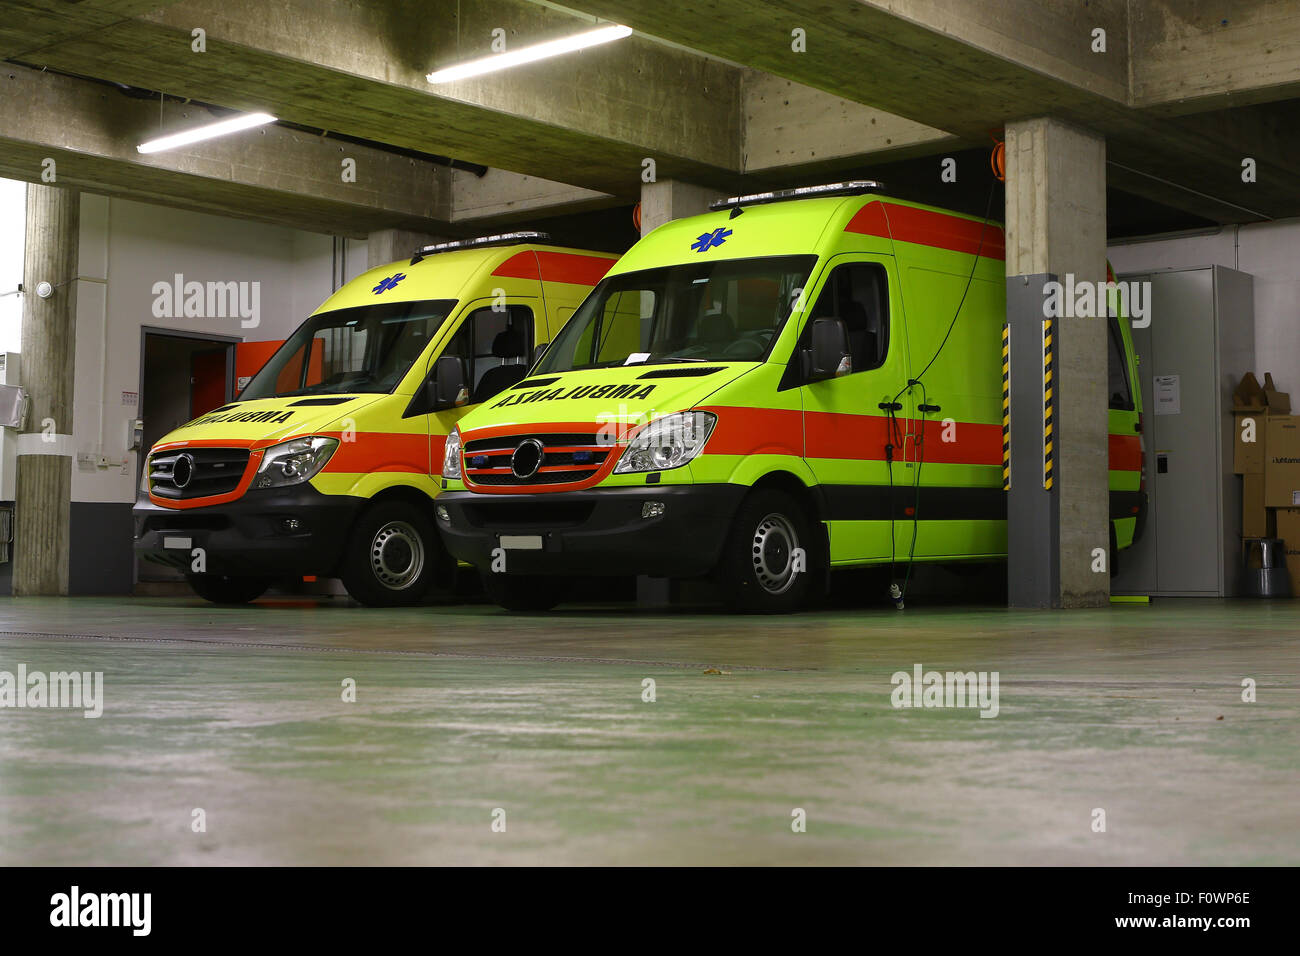 Les véhicules d'urgence, ambulance jaune garée Banque D'Images